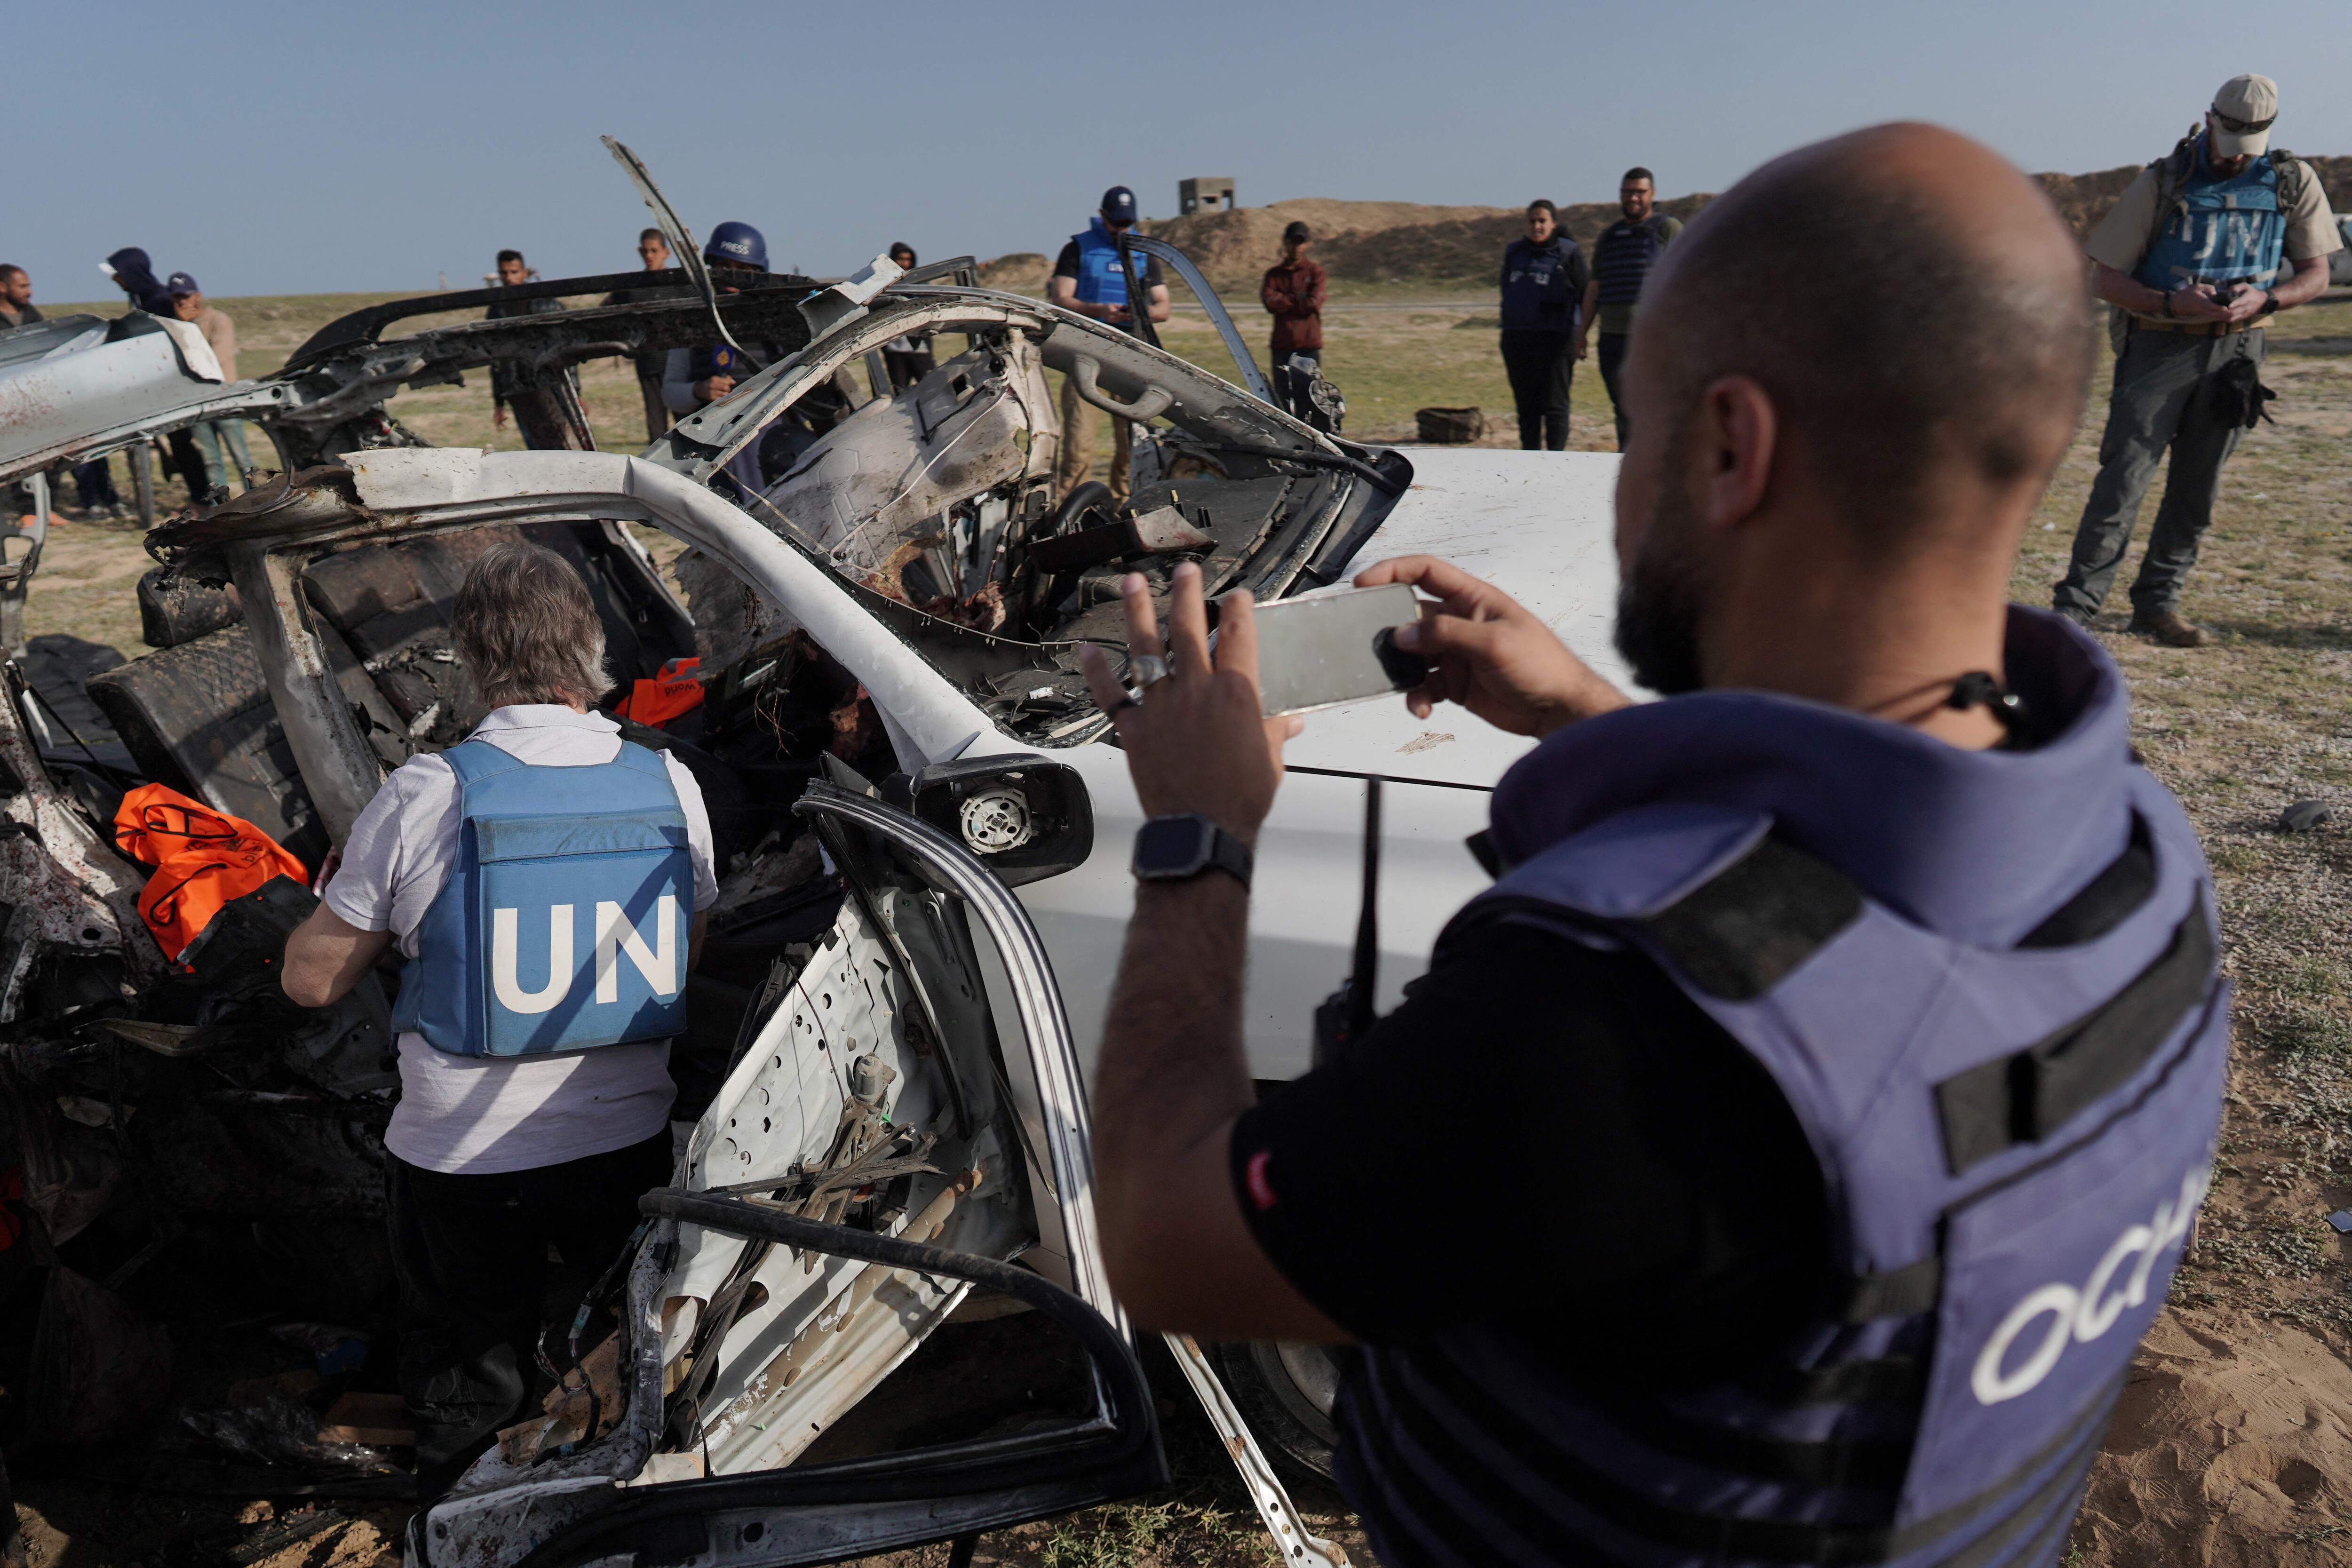 El ataque con misiles sufrido por siete trabajadores humanitarios en Gaza generó una fuerte condena internacional. Oficiales de la ONU inspeccionaron los restos de los vehículos que ocupaban las víctimas. Foto: